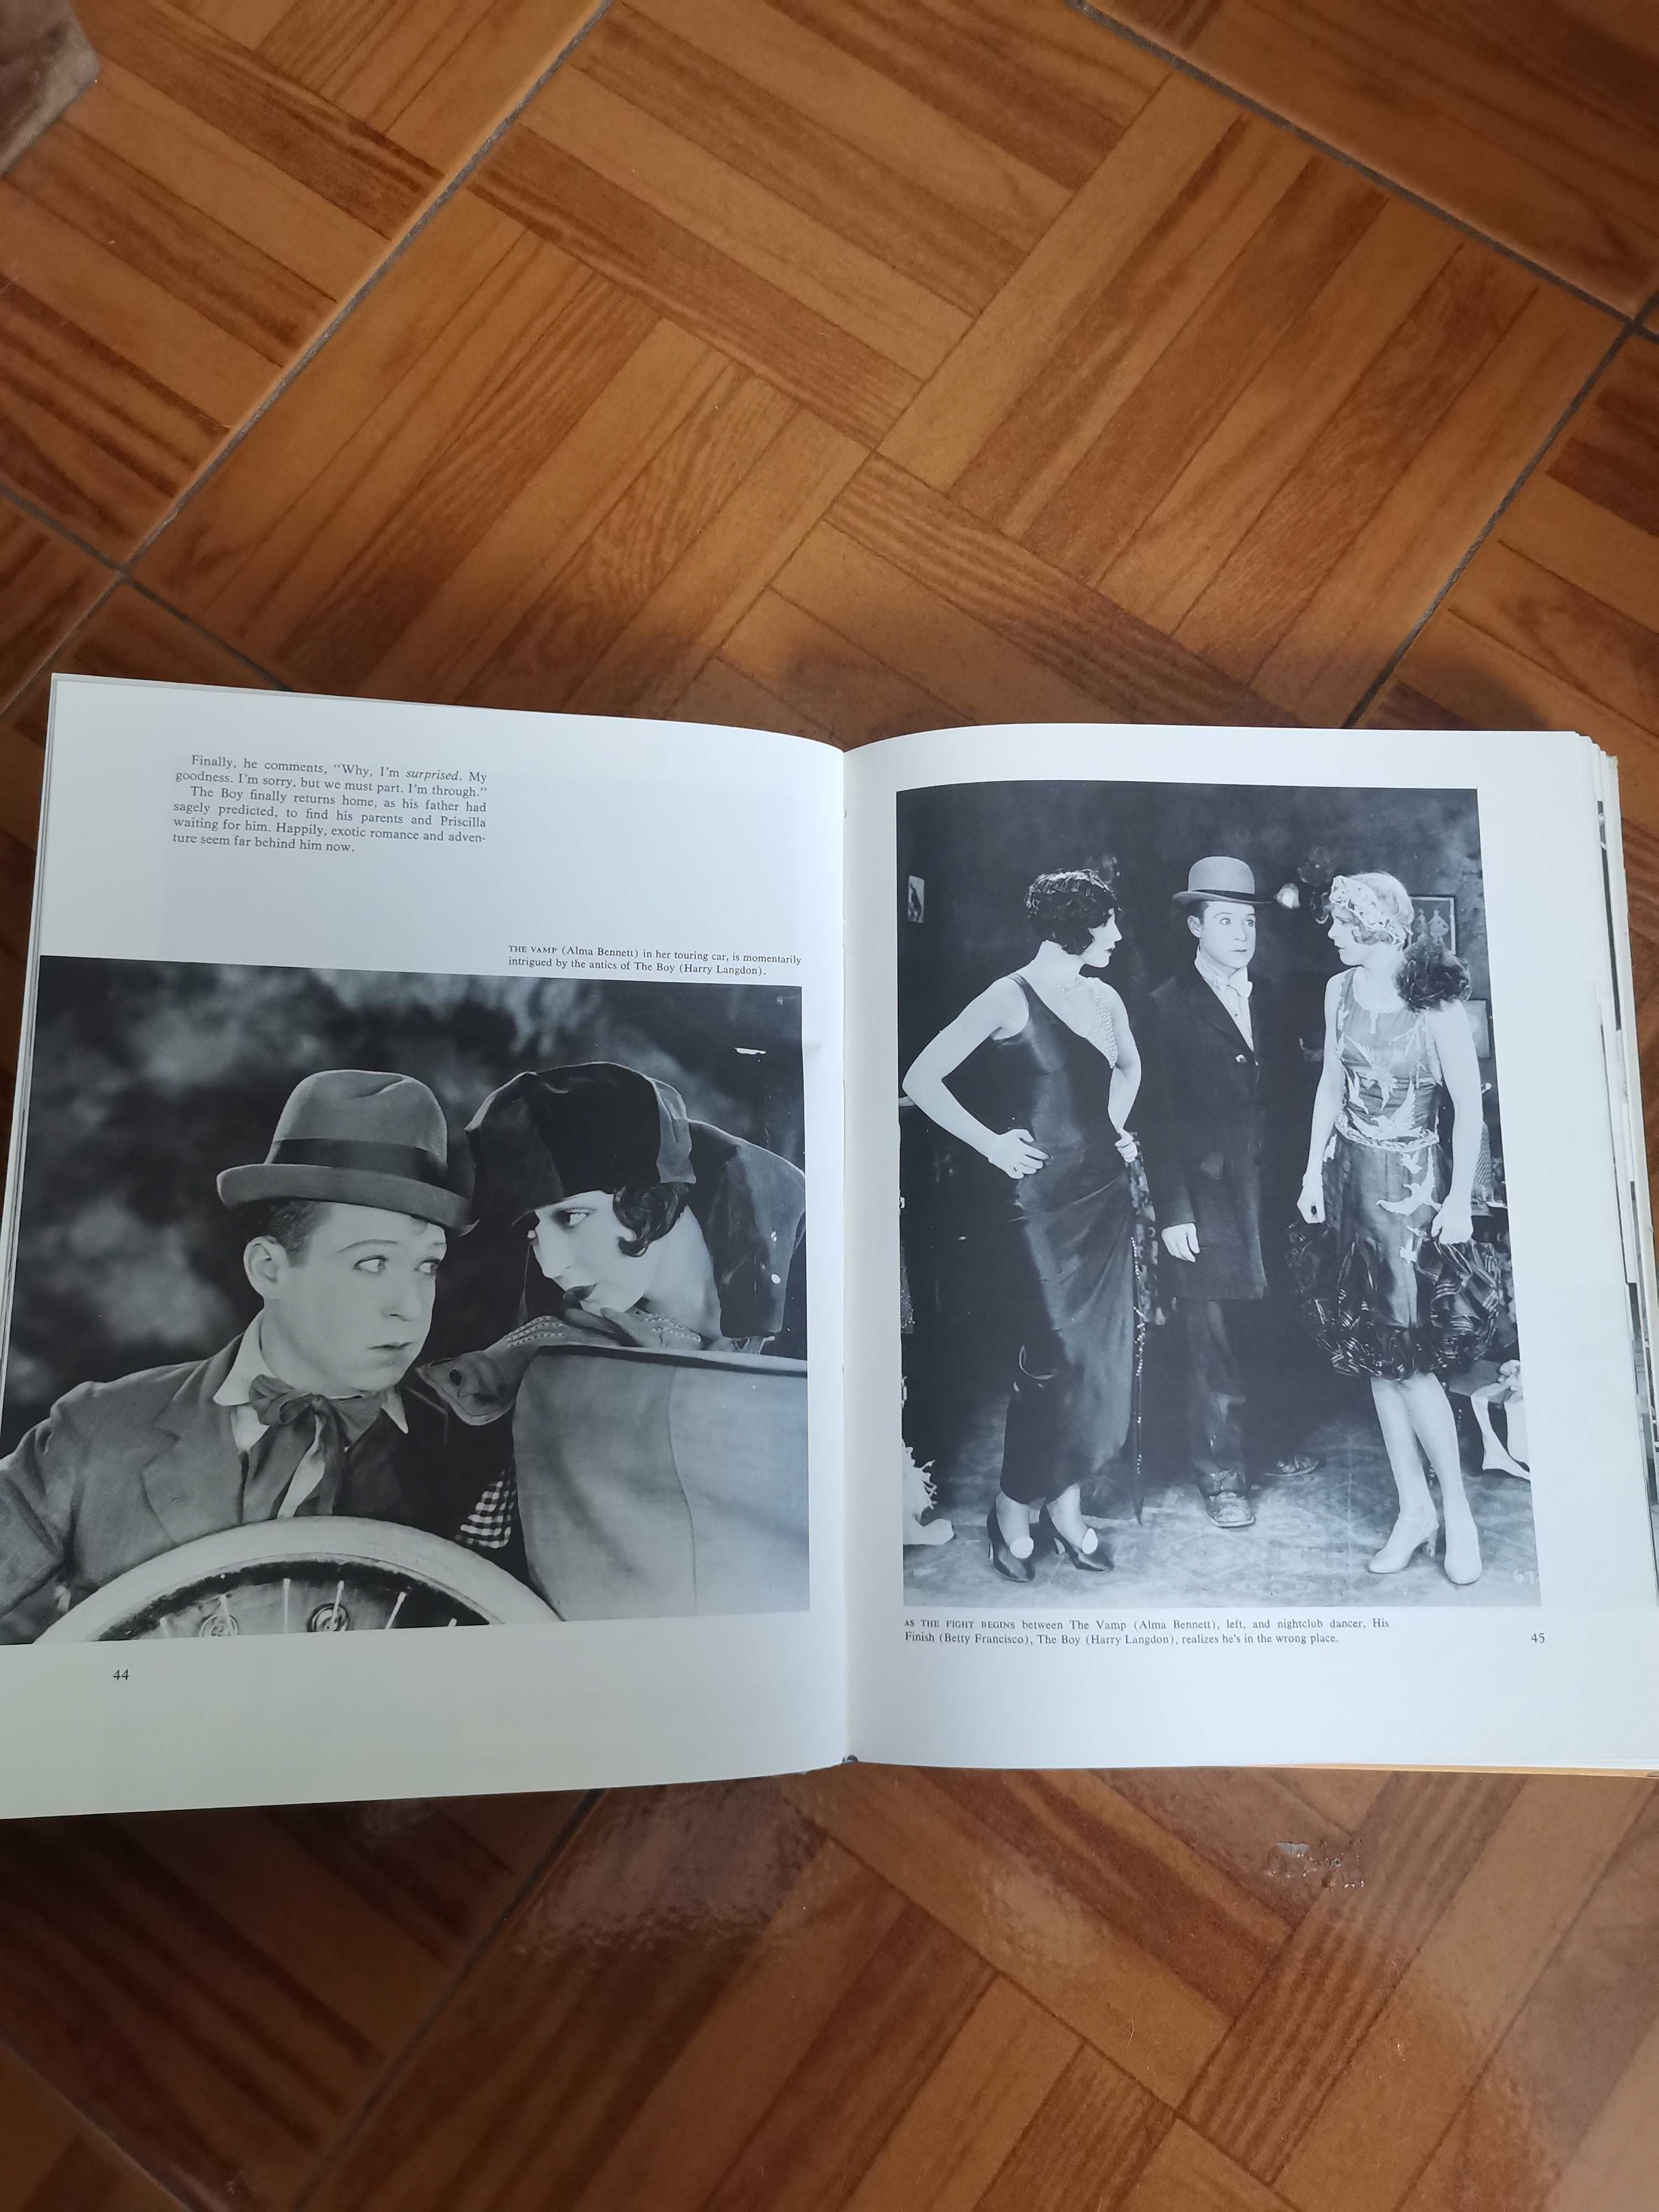 Livro The films of Frank Capra